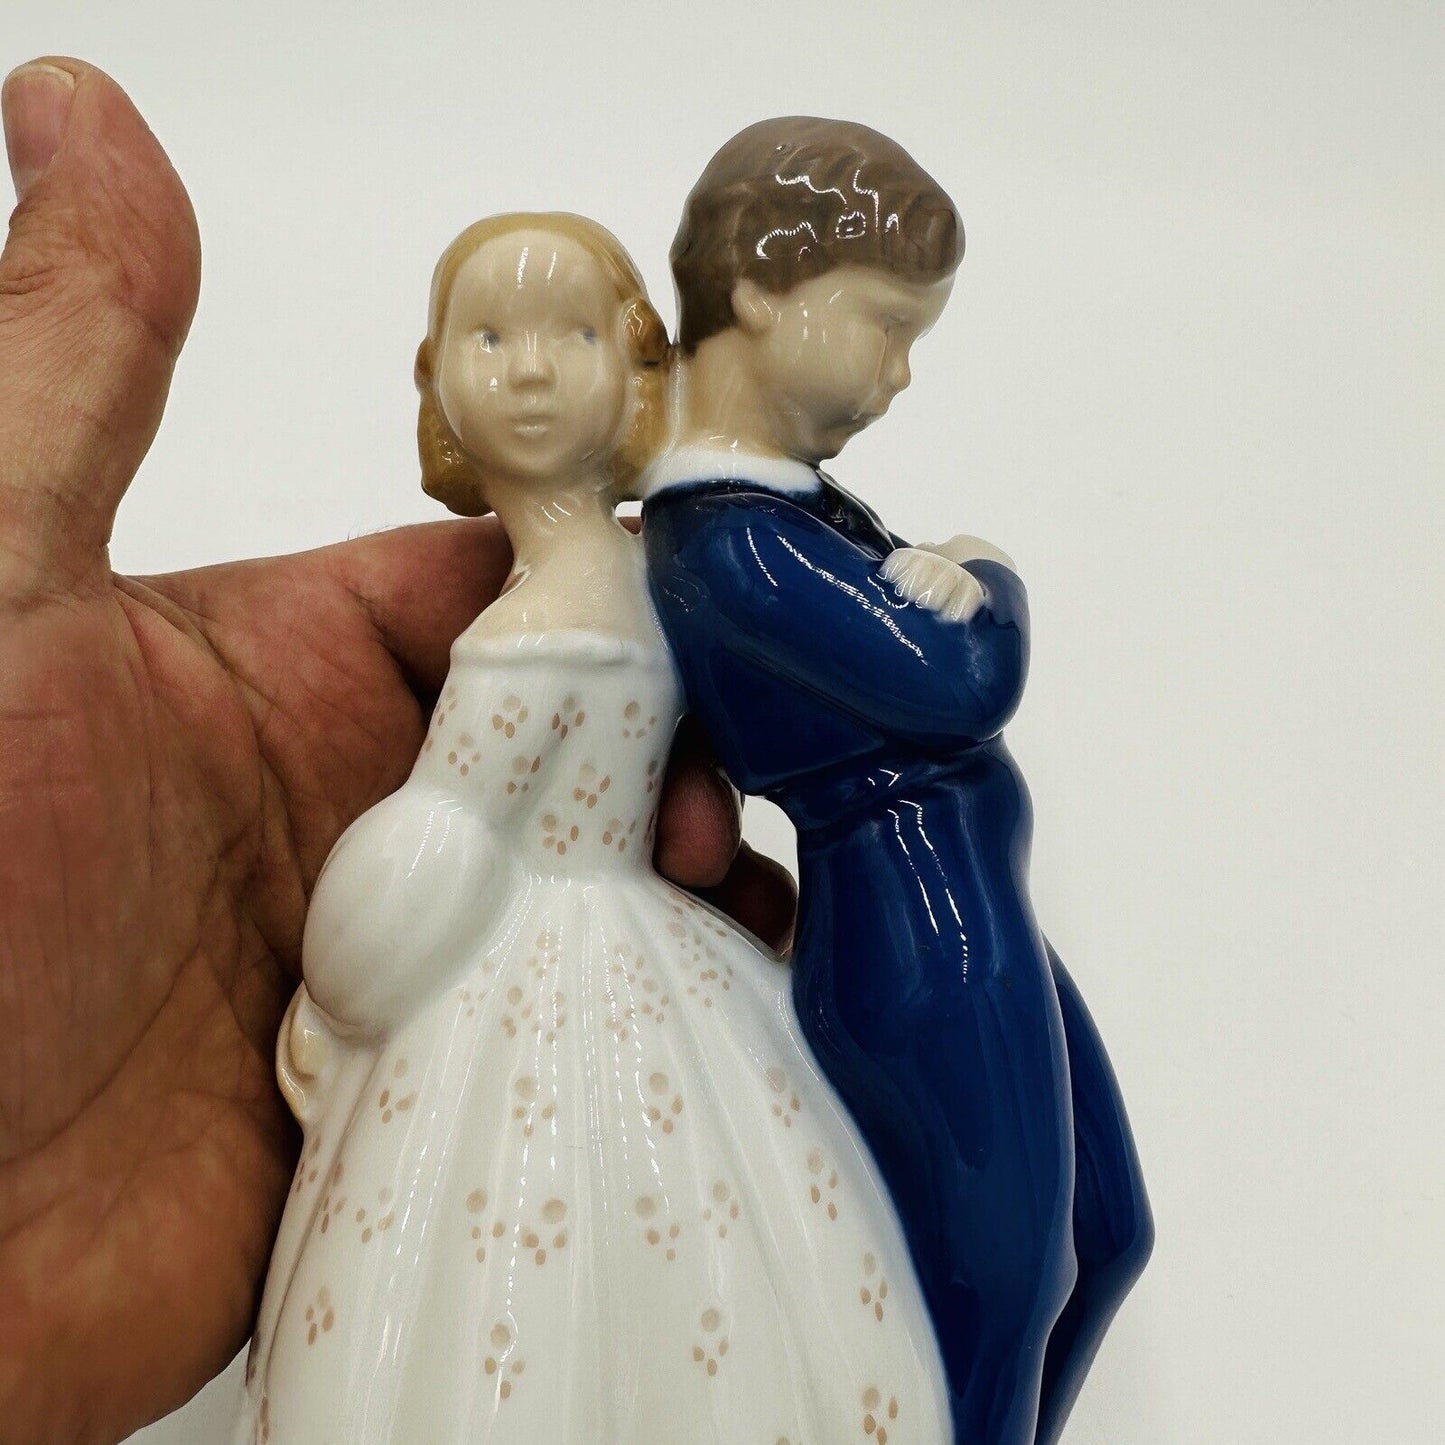 Bing & Grondahl Figurine Girl Pardon Me Couple Denmark Porcelain Boy #2372